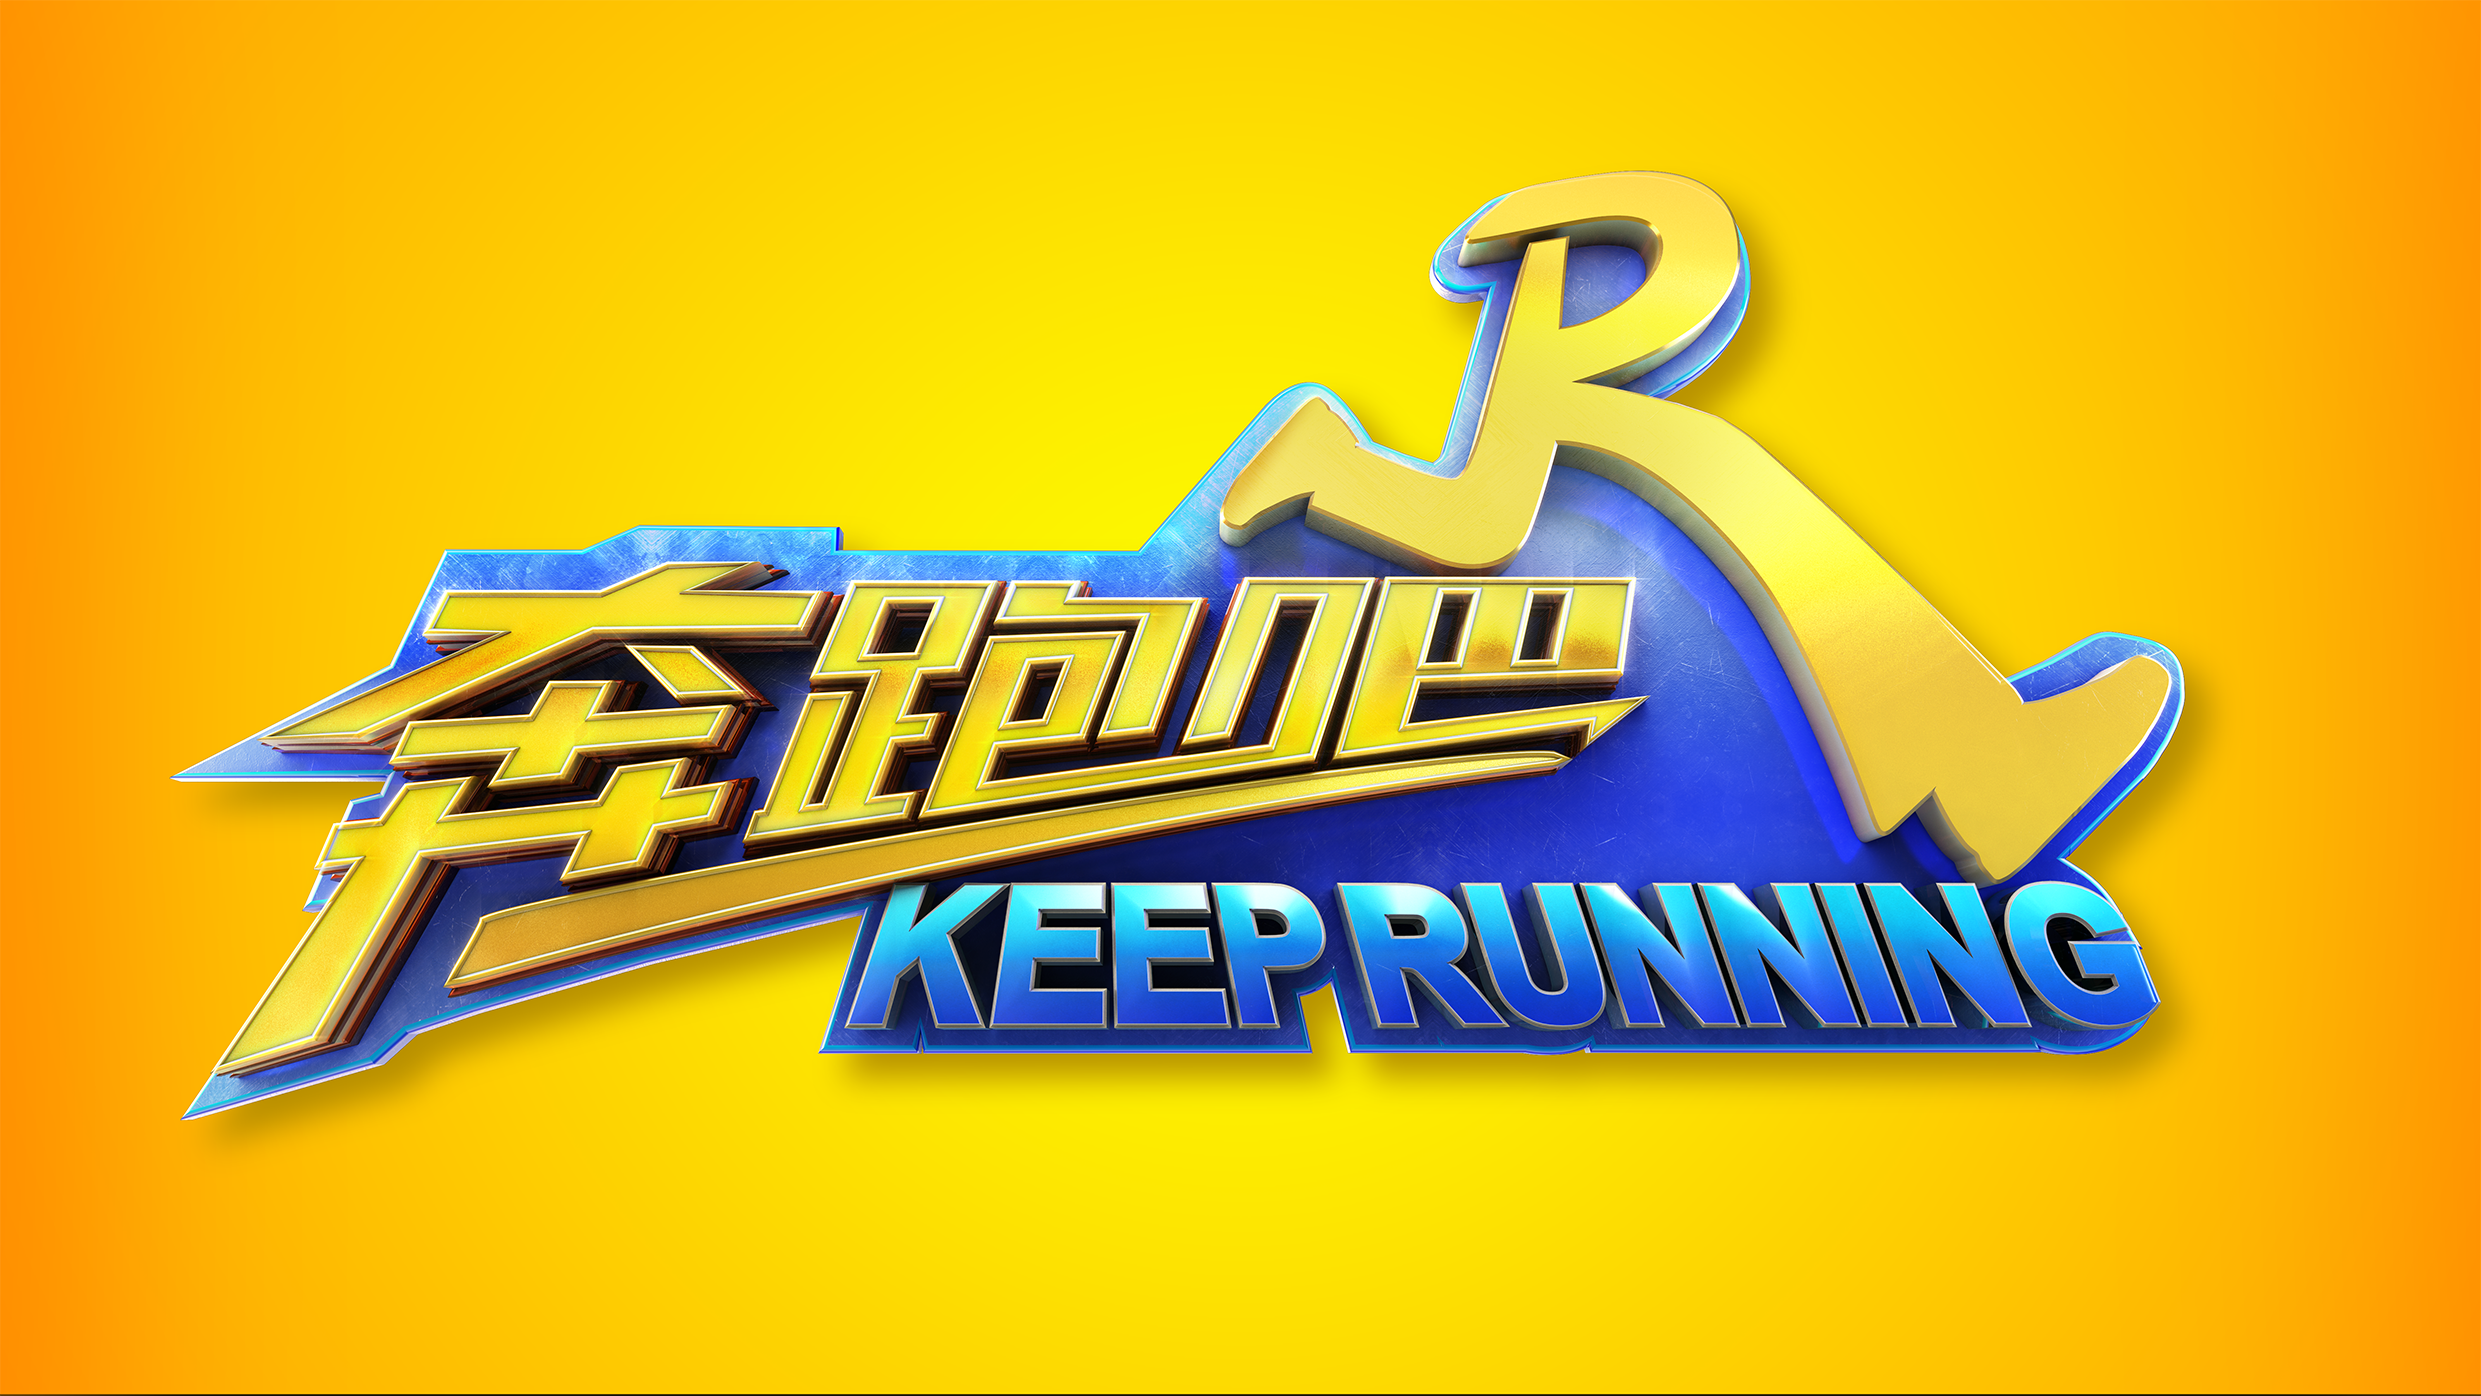 浙江卫视《奔跑吧 keep running》跑男第五季logo设计